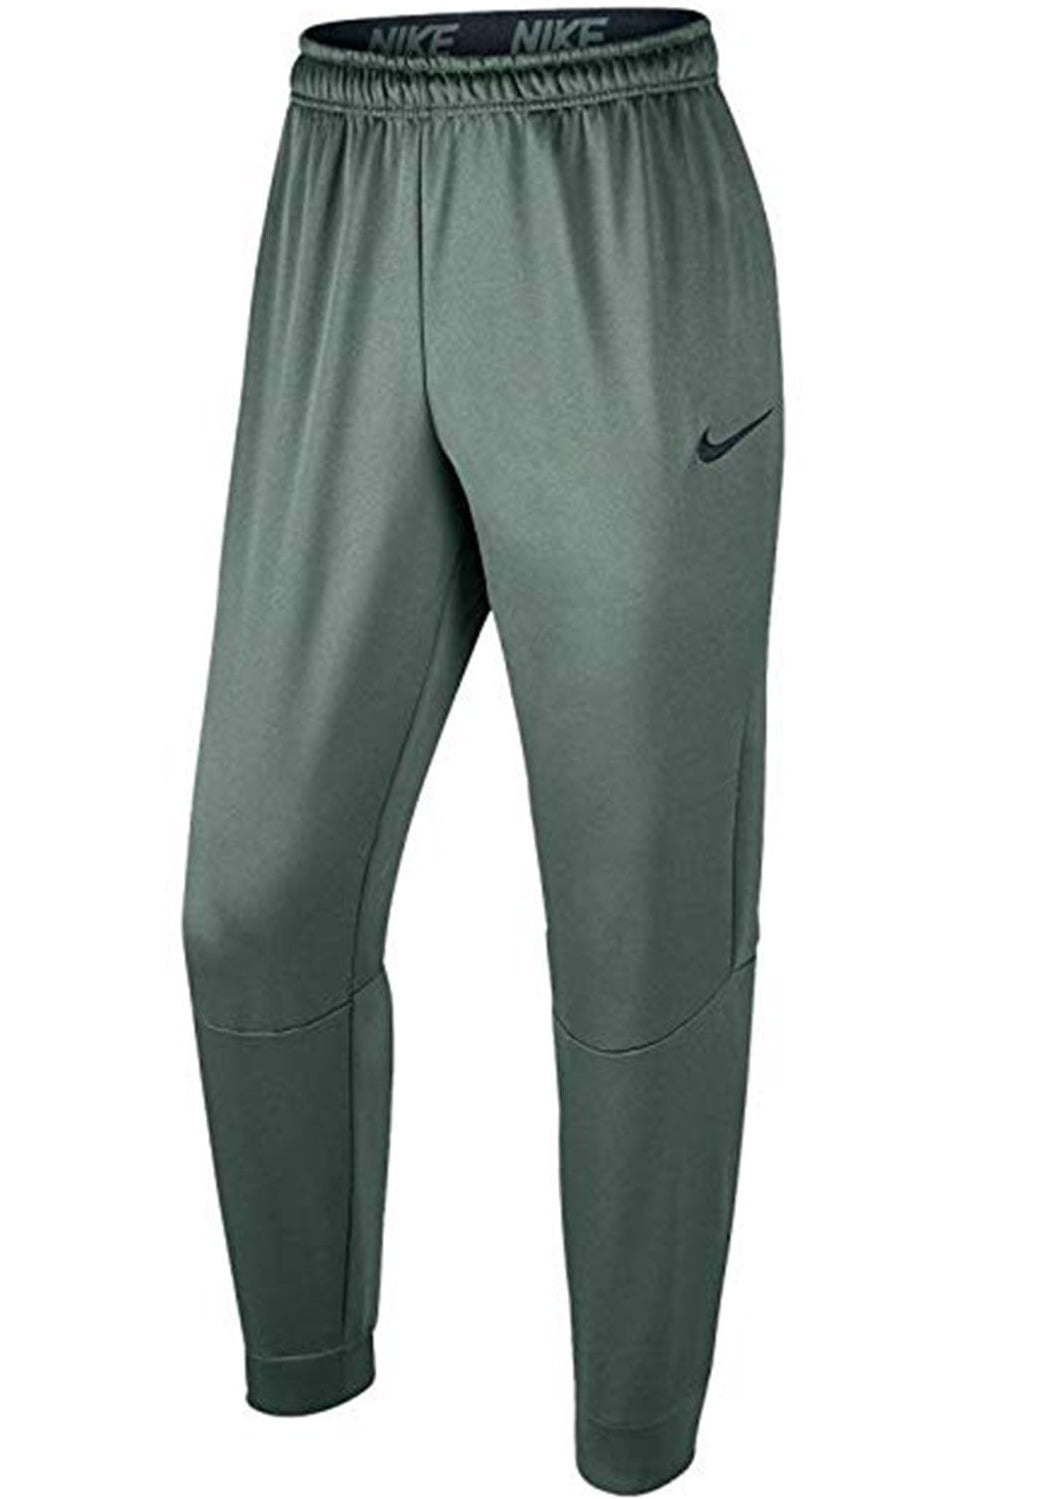 Nike - Mens Drawstring Stretch Dri-Fit Track Pants 2XL - Walmart.com ...